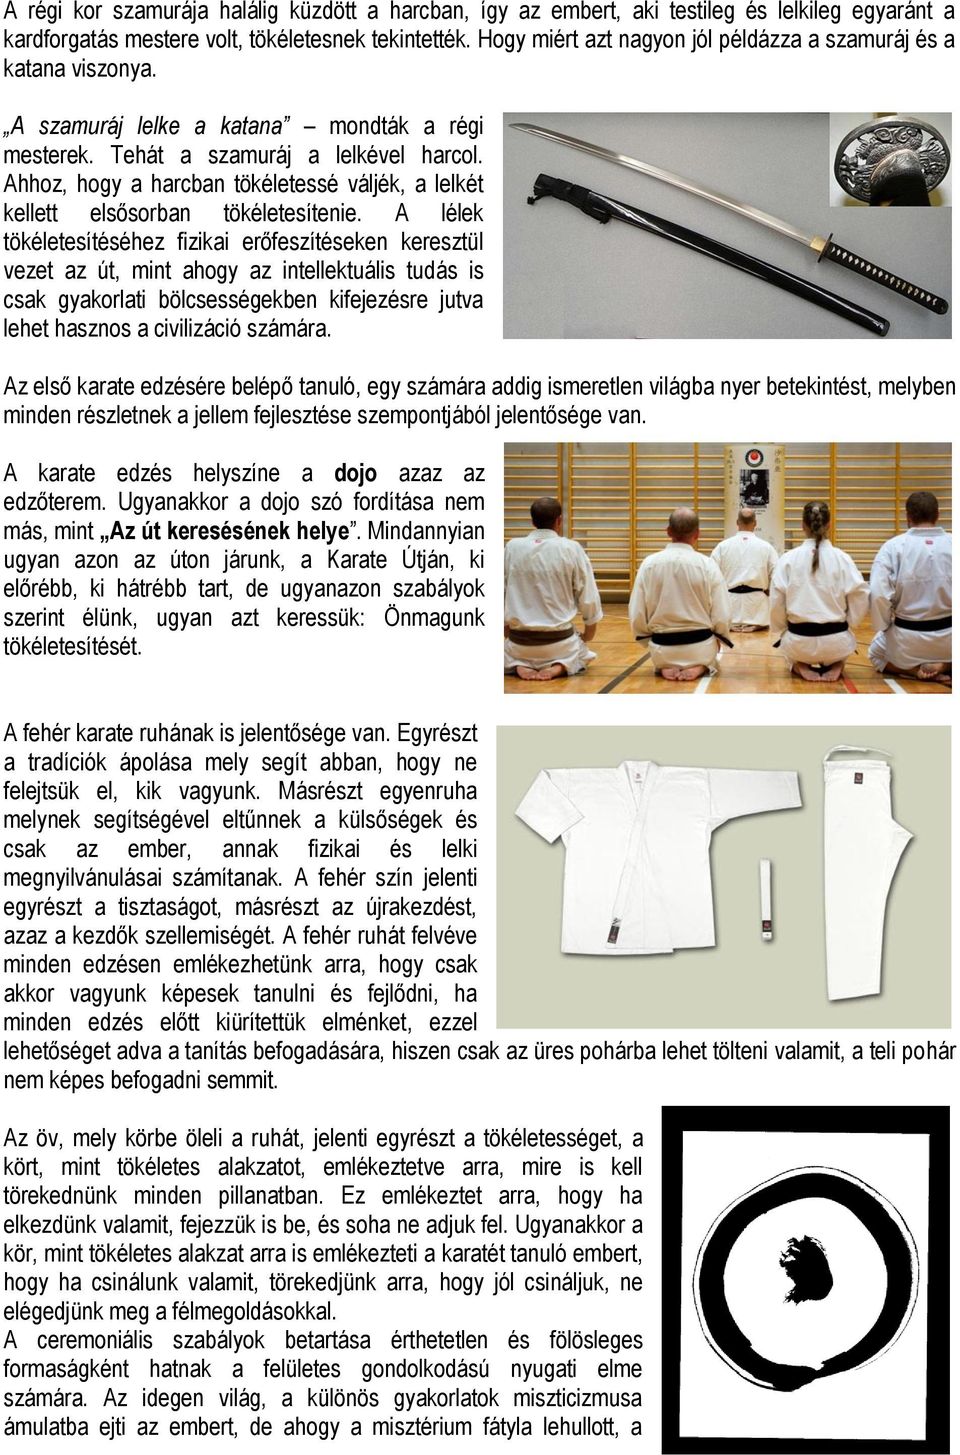 A Karate-do szociális és fizikai értéke Készítette: Csákvári László - PDF  Ingyenes letöltés